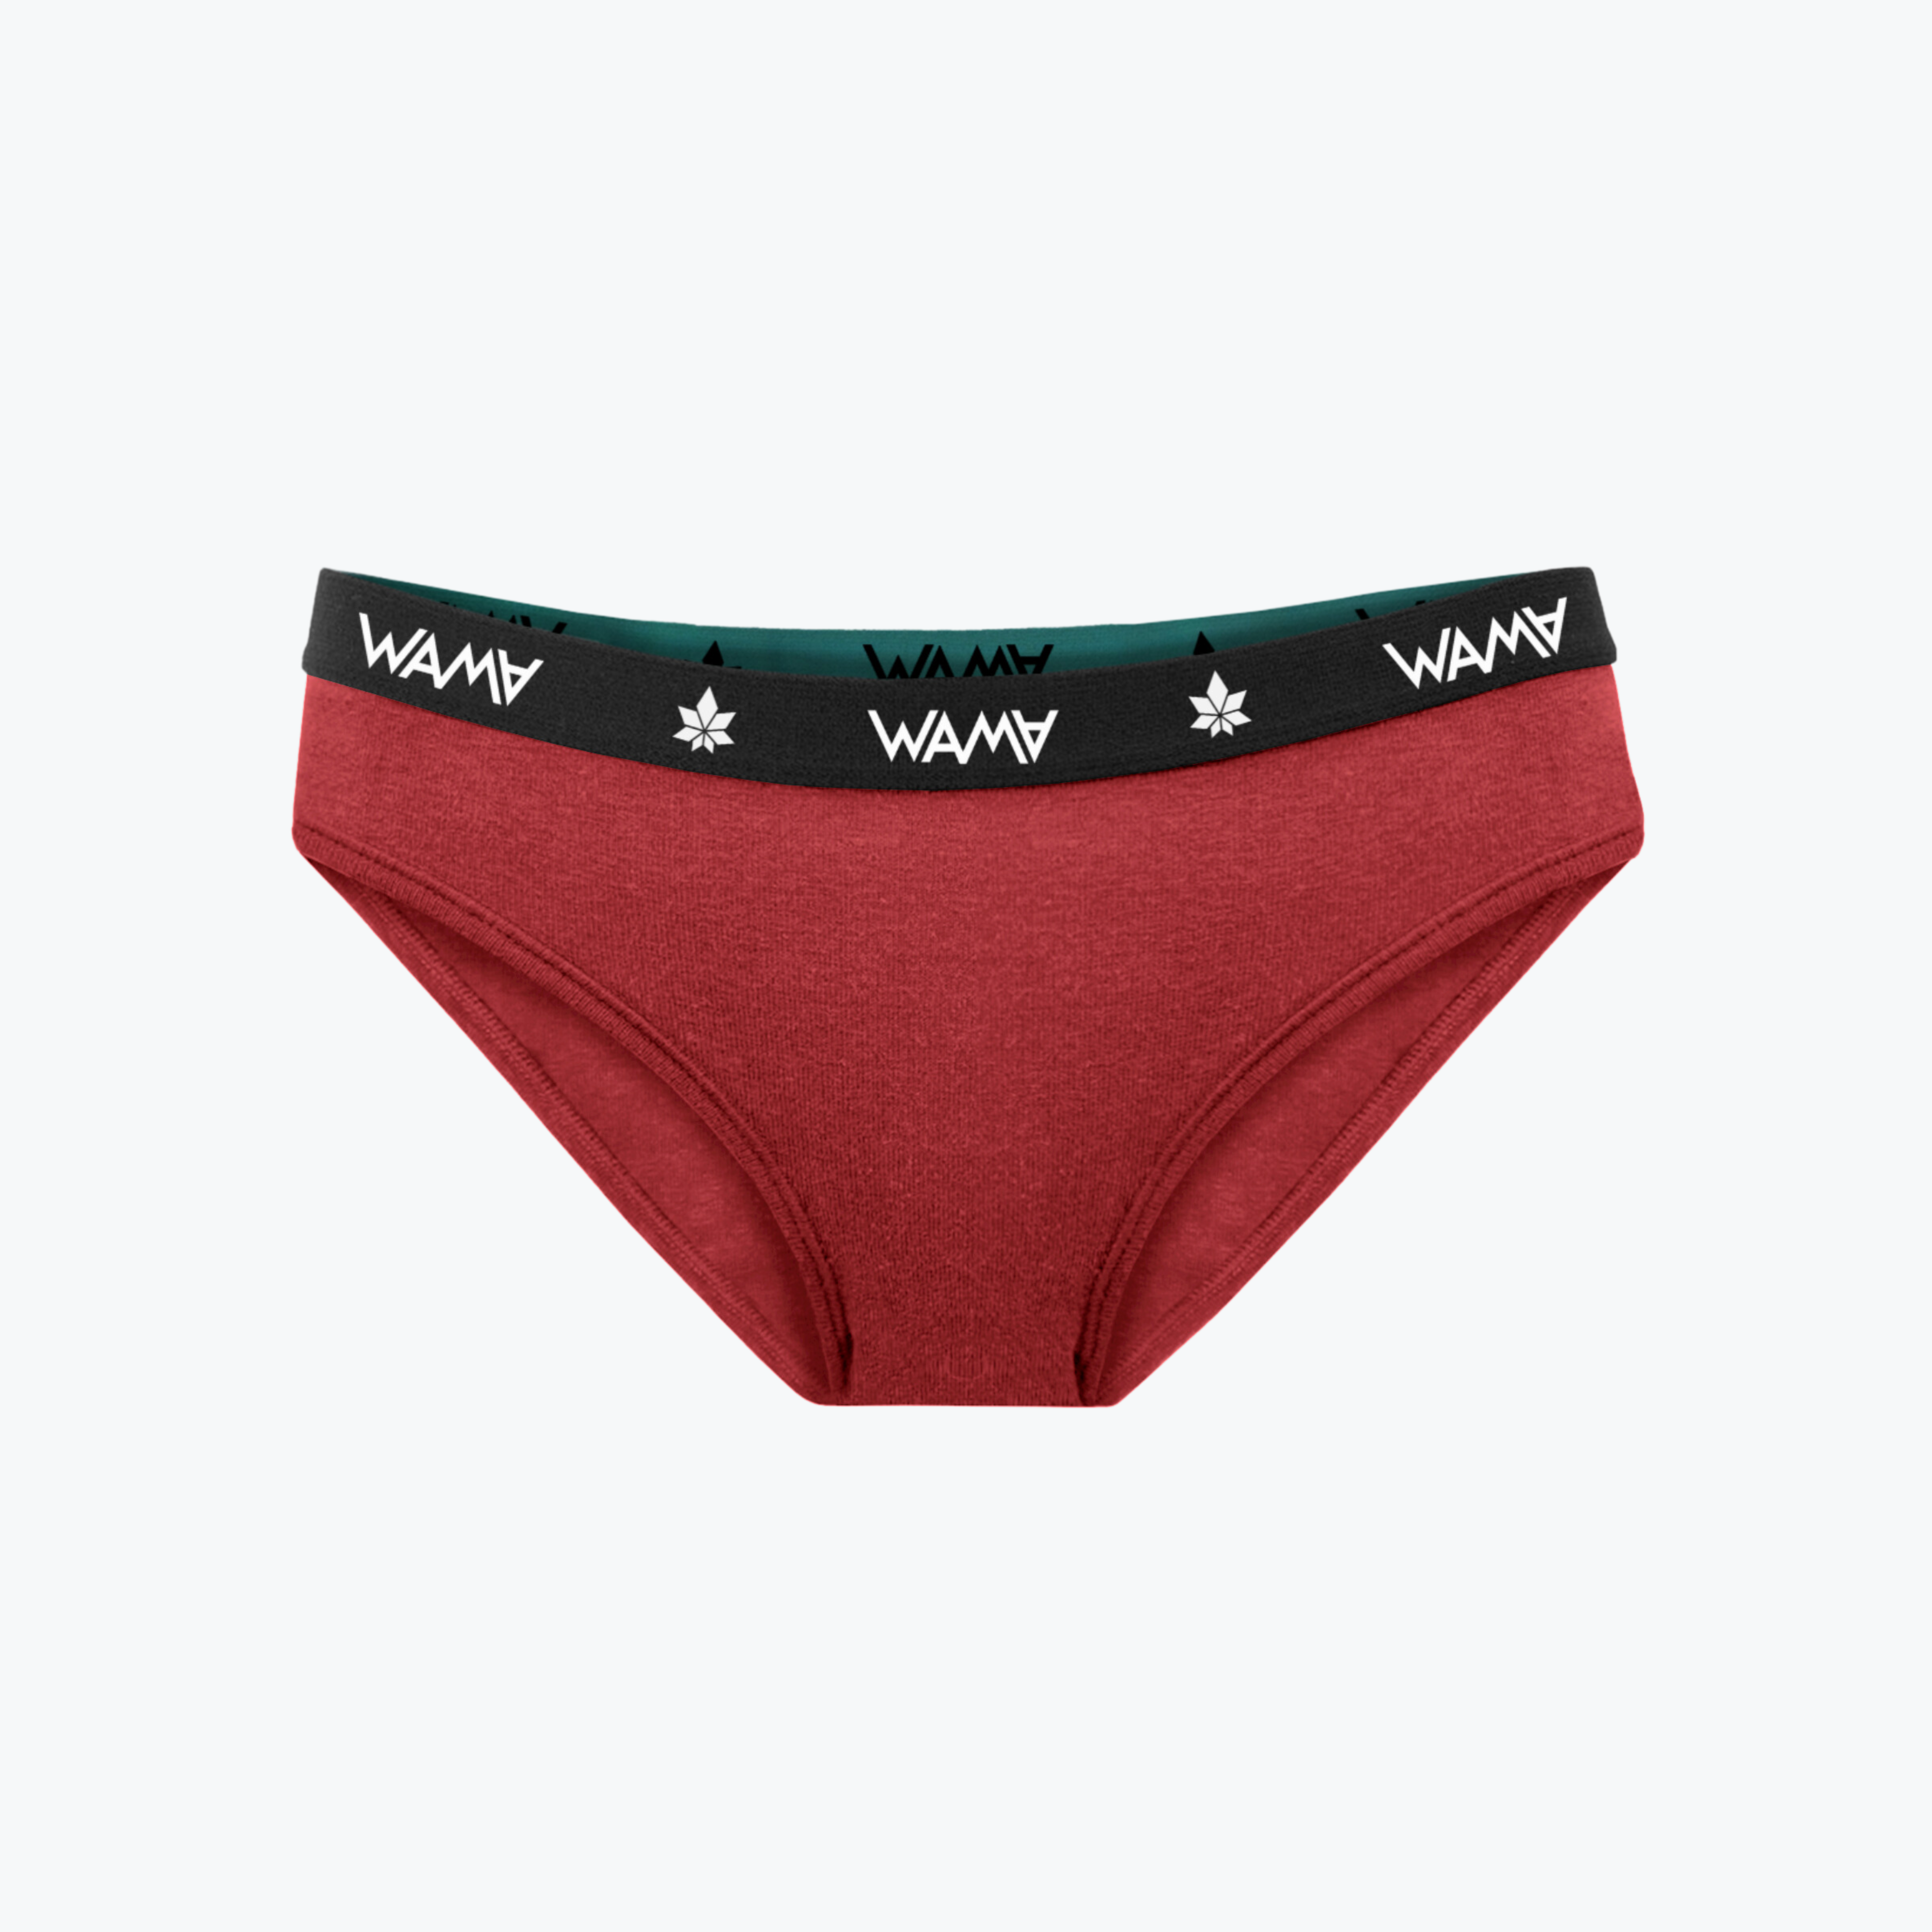 Buy WAMA Underwear Online - Hemp Store